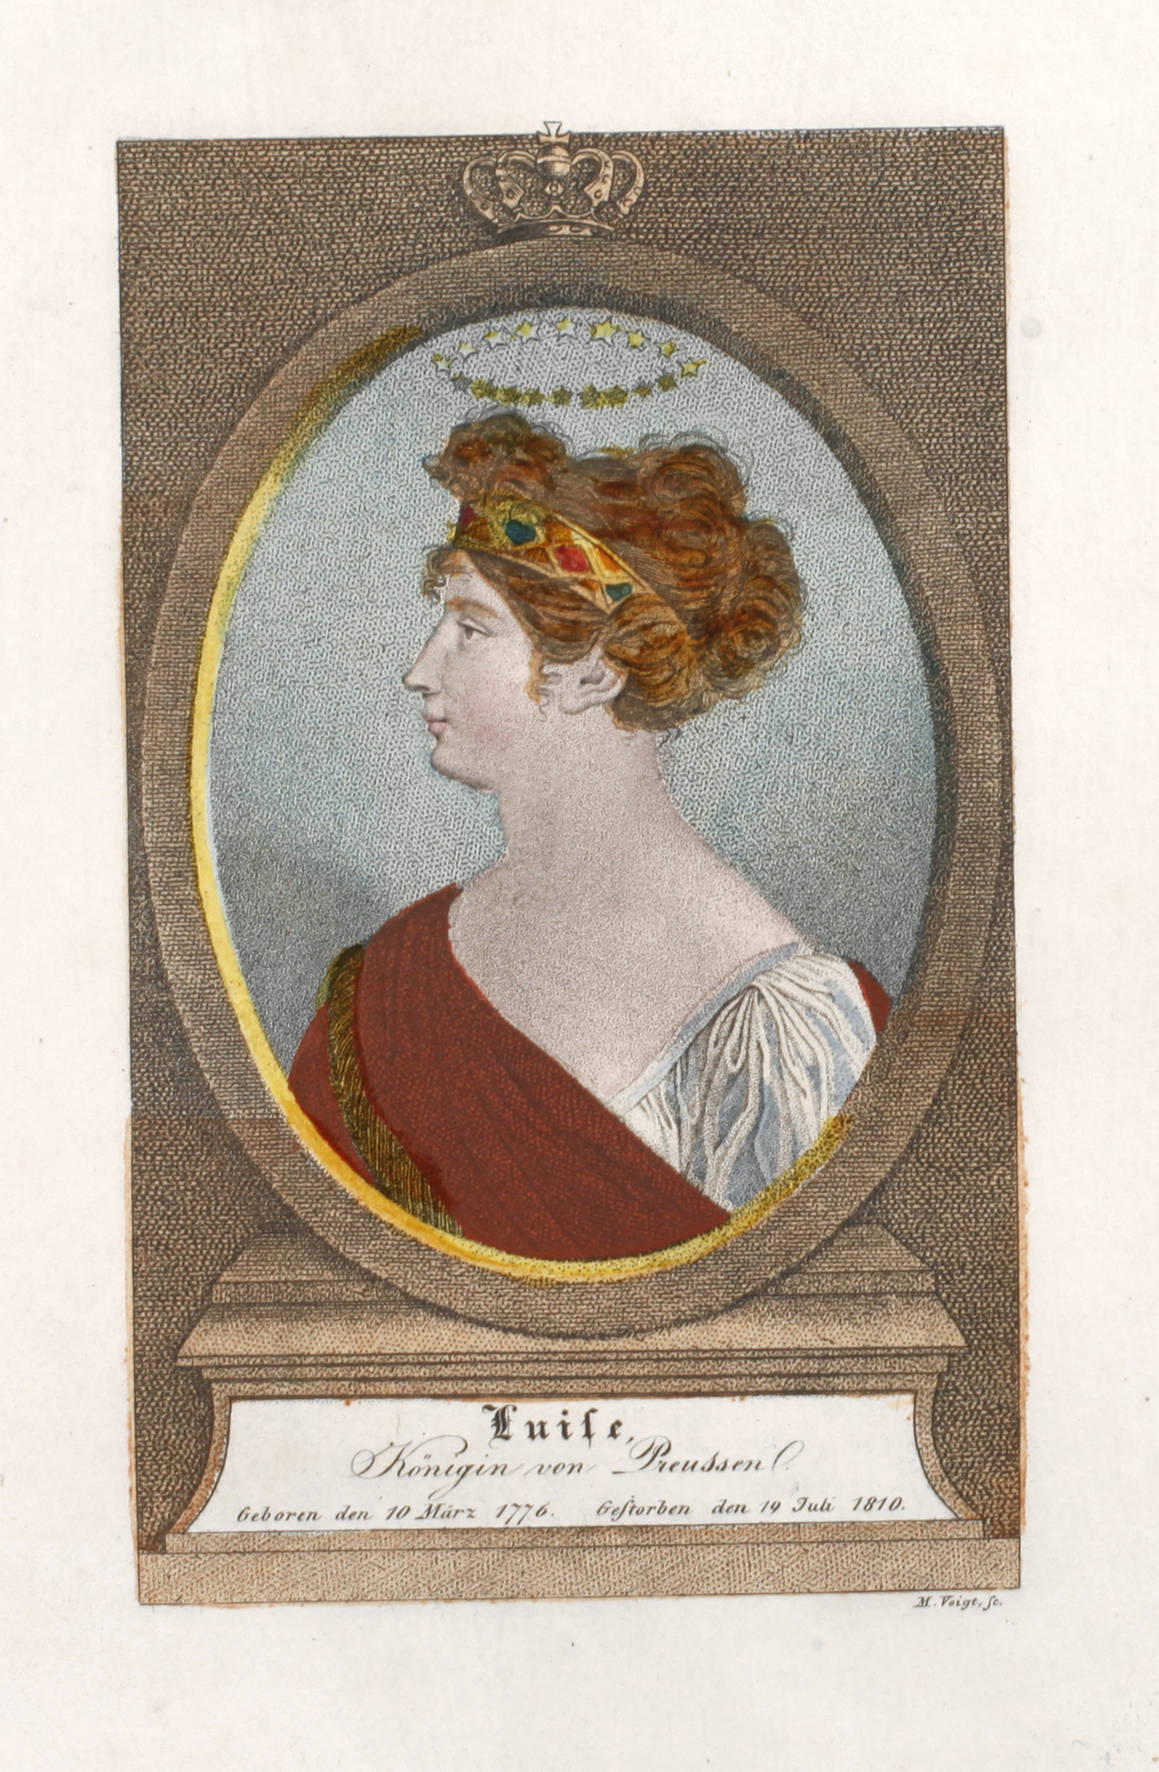 Moritz Voigt, ”Luise, Königin von Preussen”